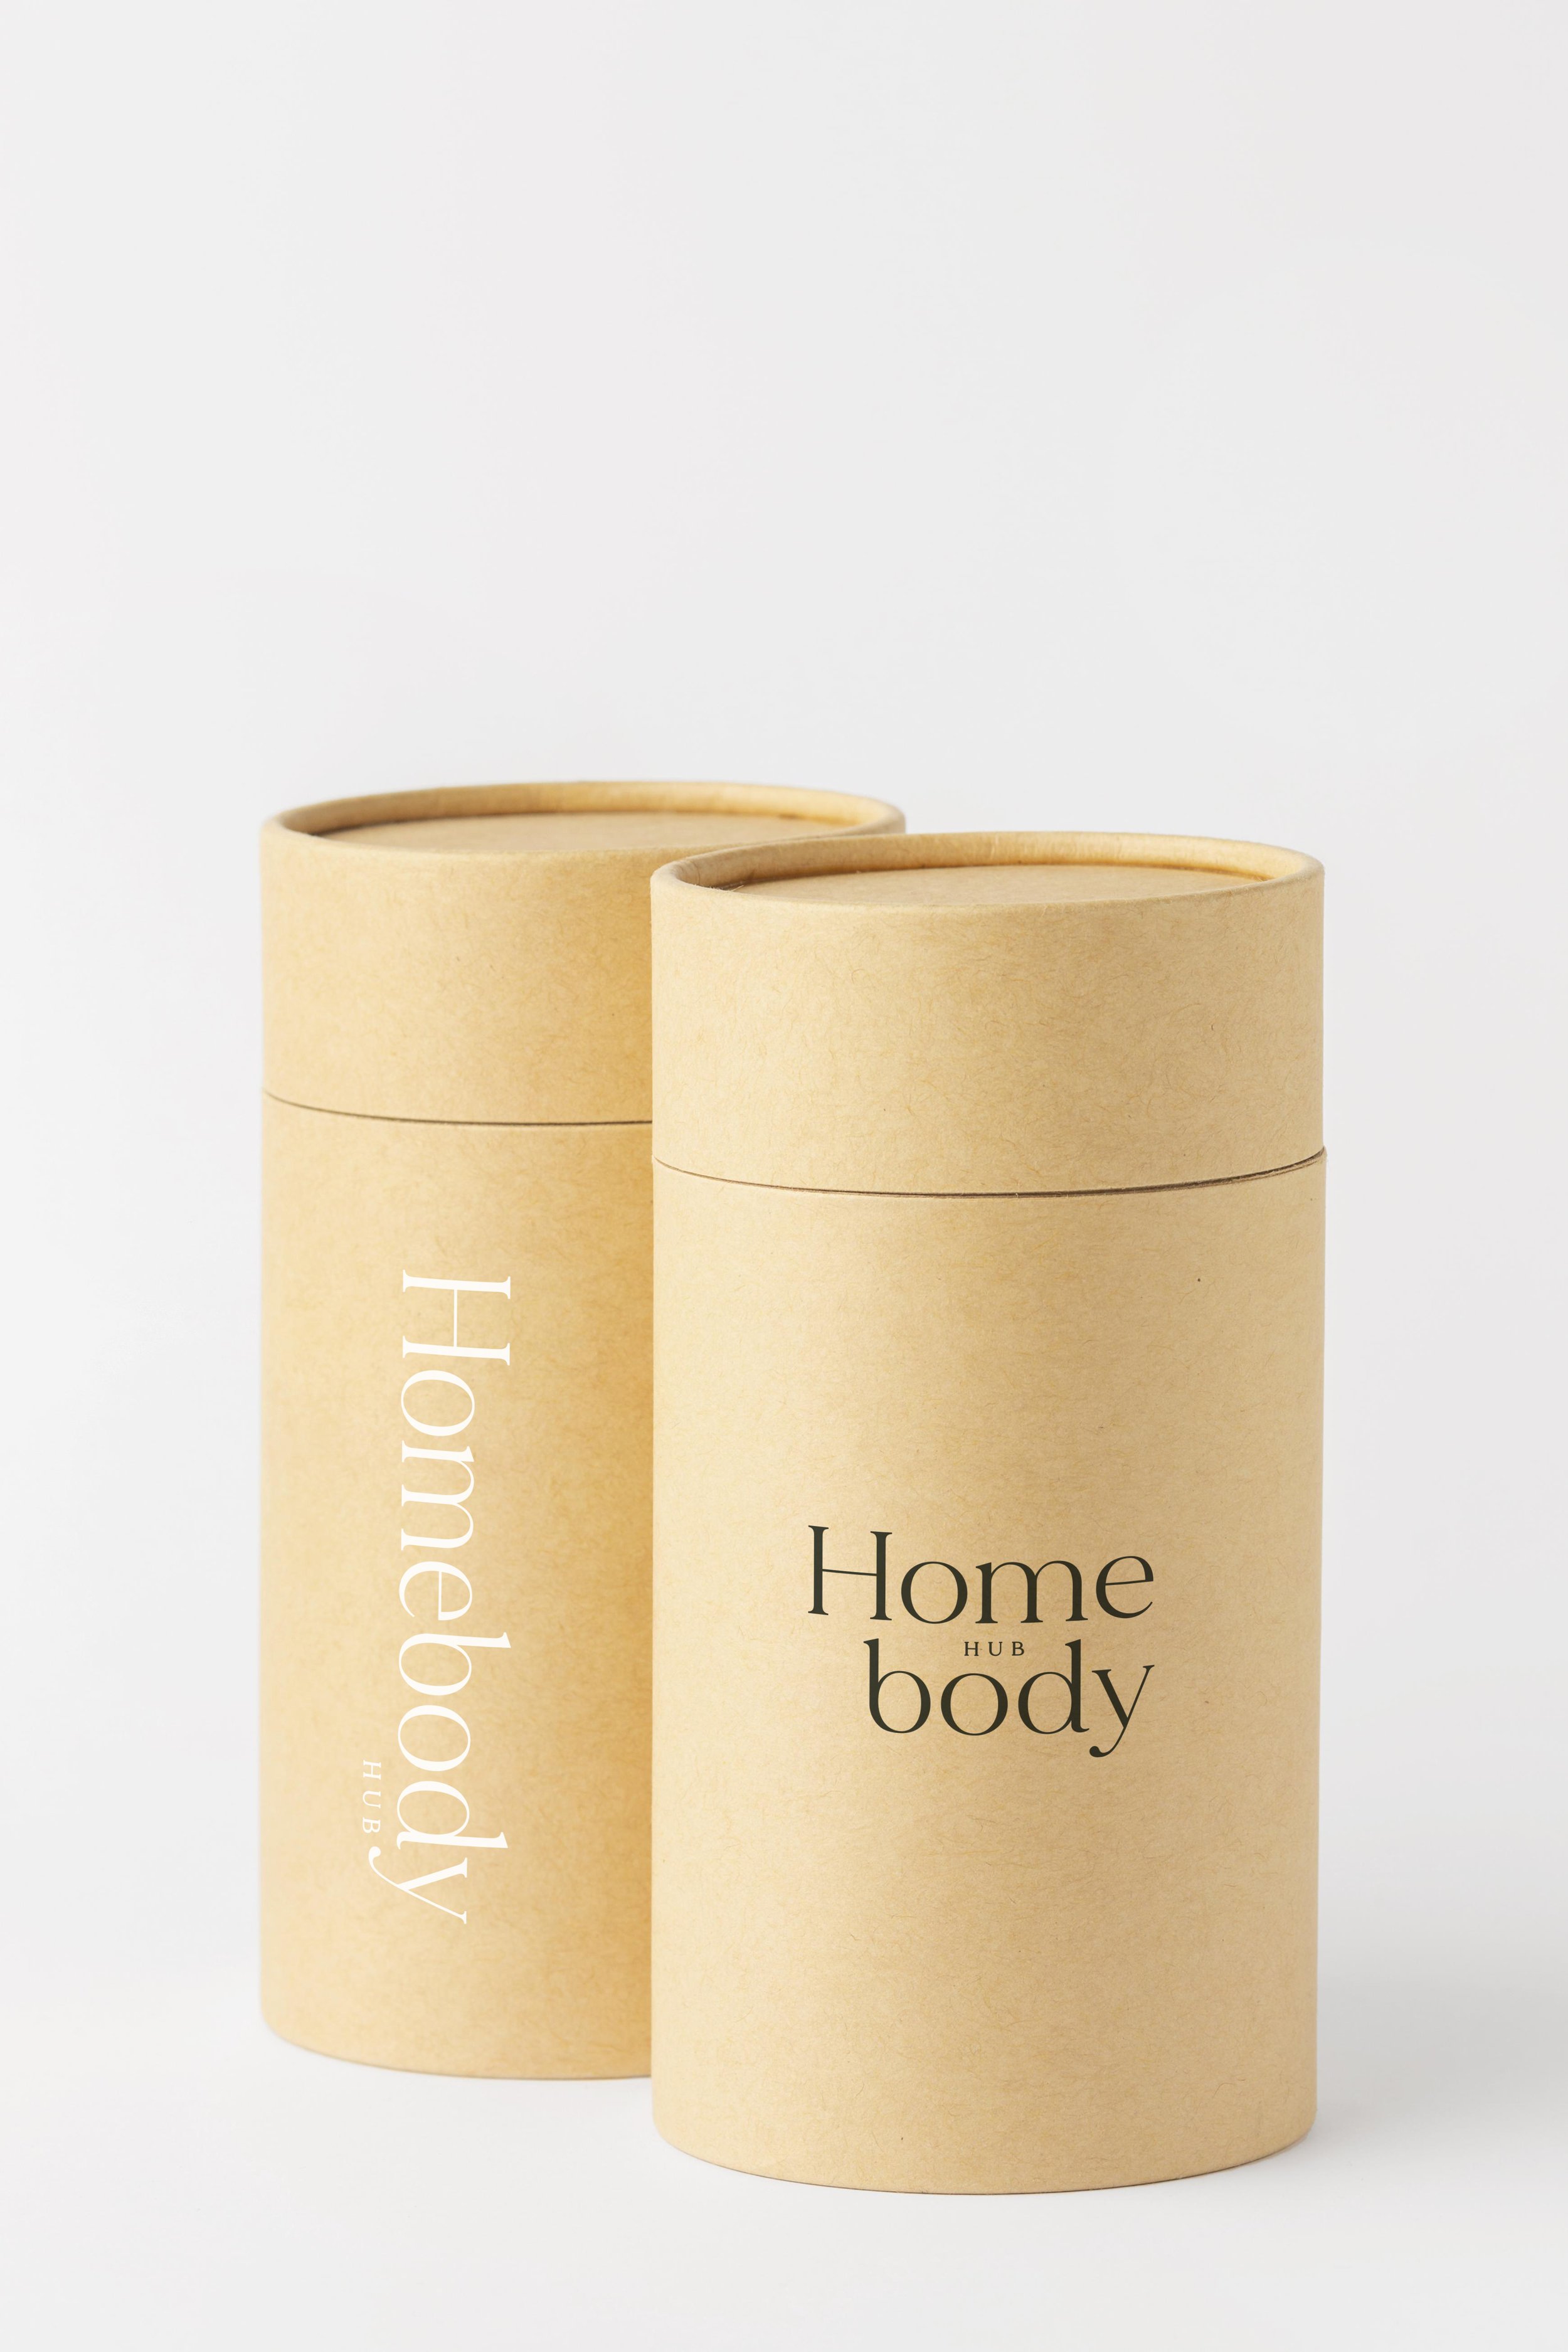 Homebody_Packaging.jpg